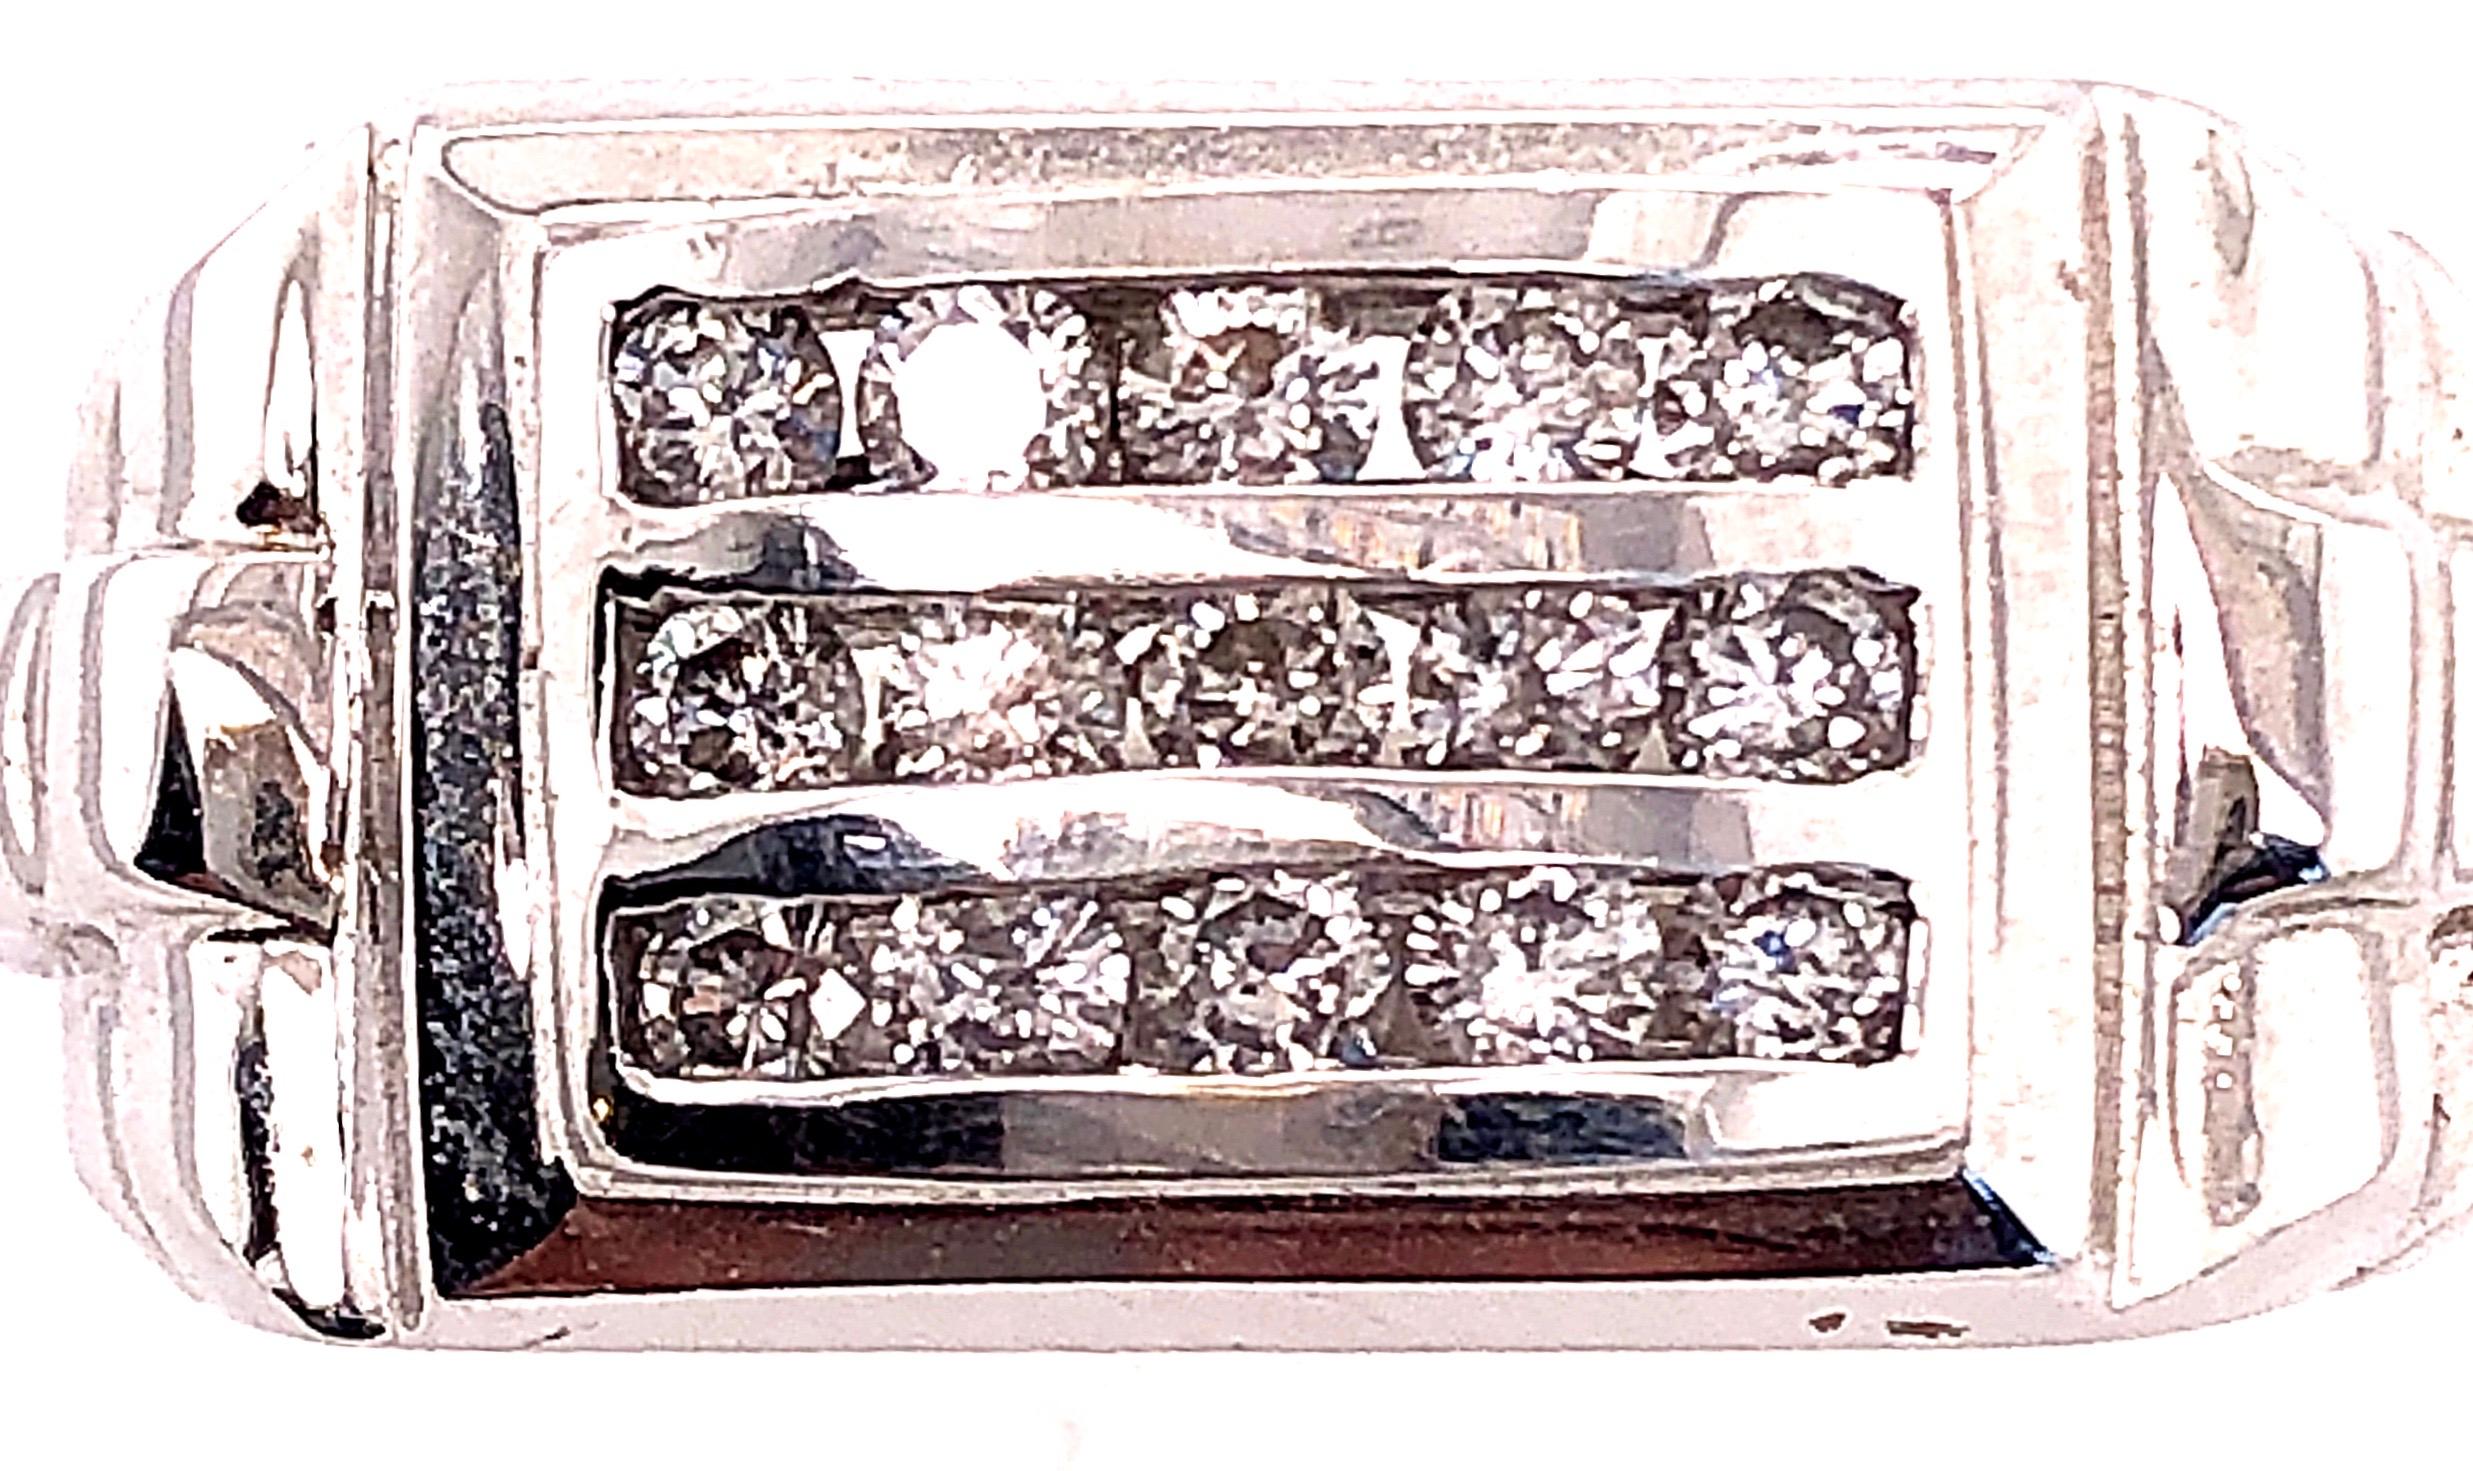 14 Karat Weißgold Fashion Ring mit runden Diamanten 0,80 Total Diamond Weight.
Größe 11
13.59 Gramm Gesamtgewicht.
11.58 Ringhöhe